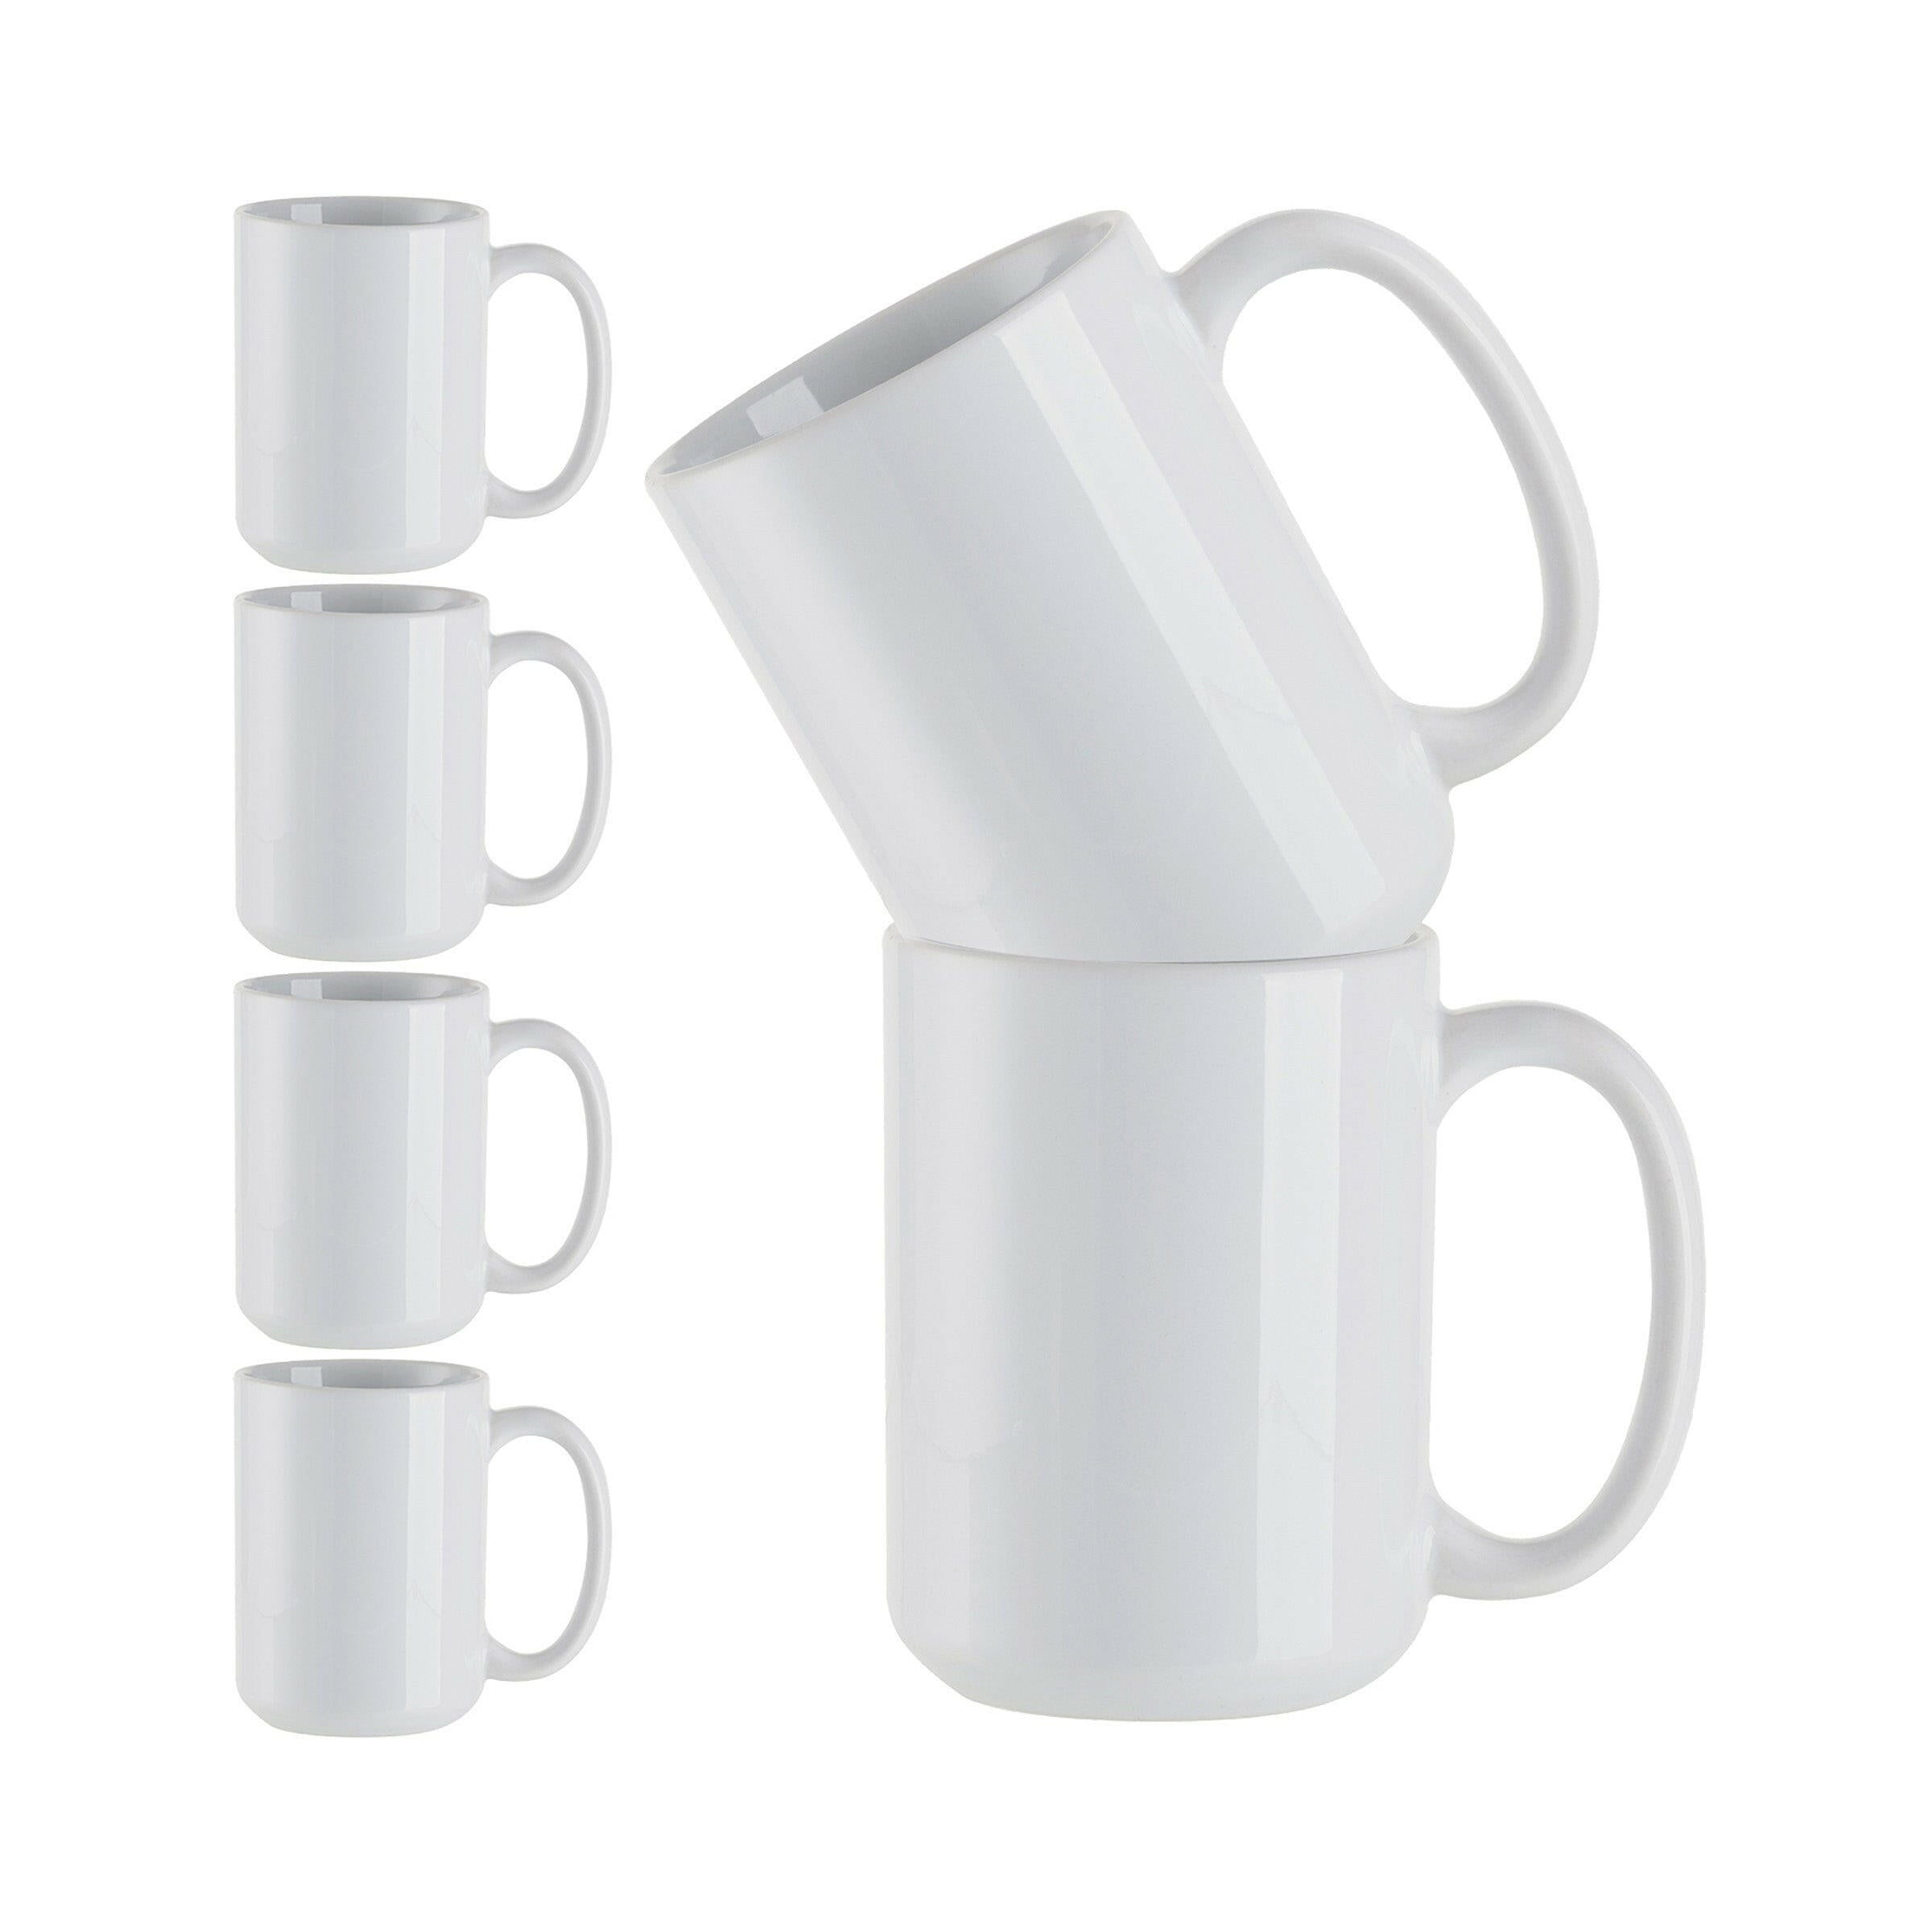 15oz White Ceramic Sublimation Mugs - 6 Pack